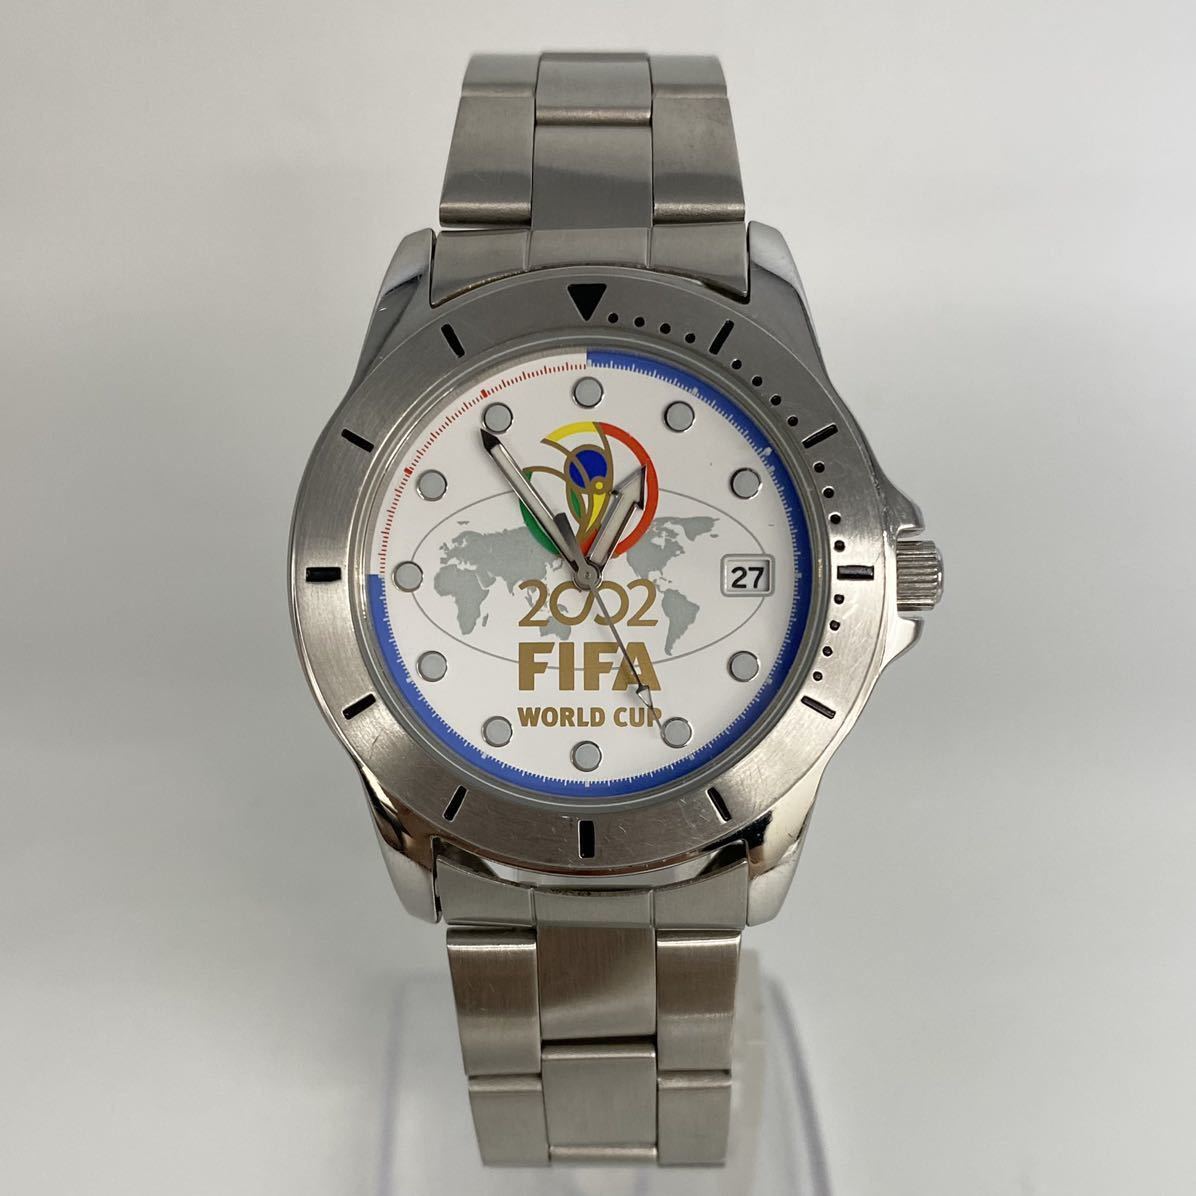 ヤフオク! -「2002 fifaワールドカップ 時計」の落札相場・落札価格